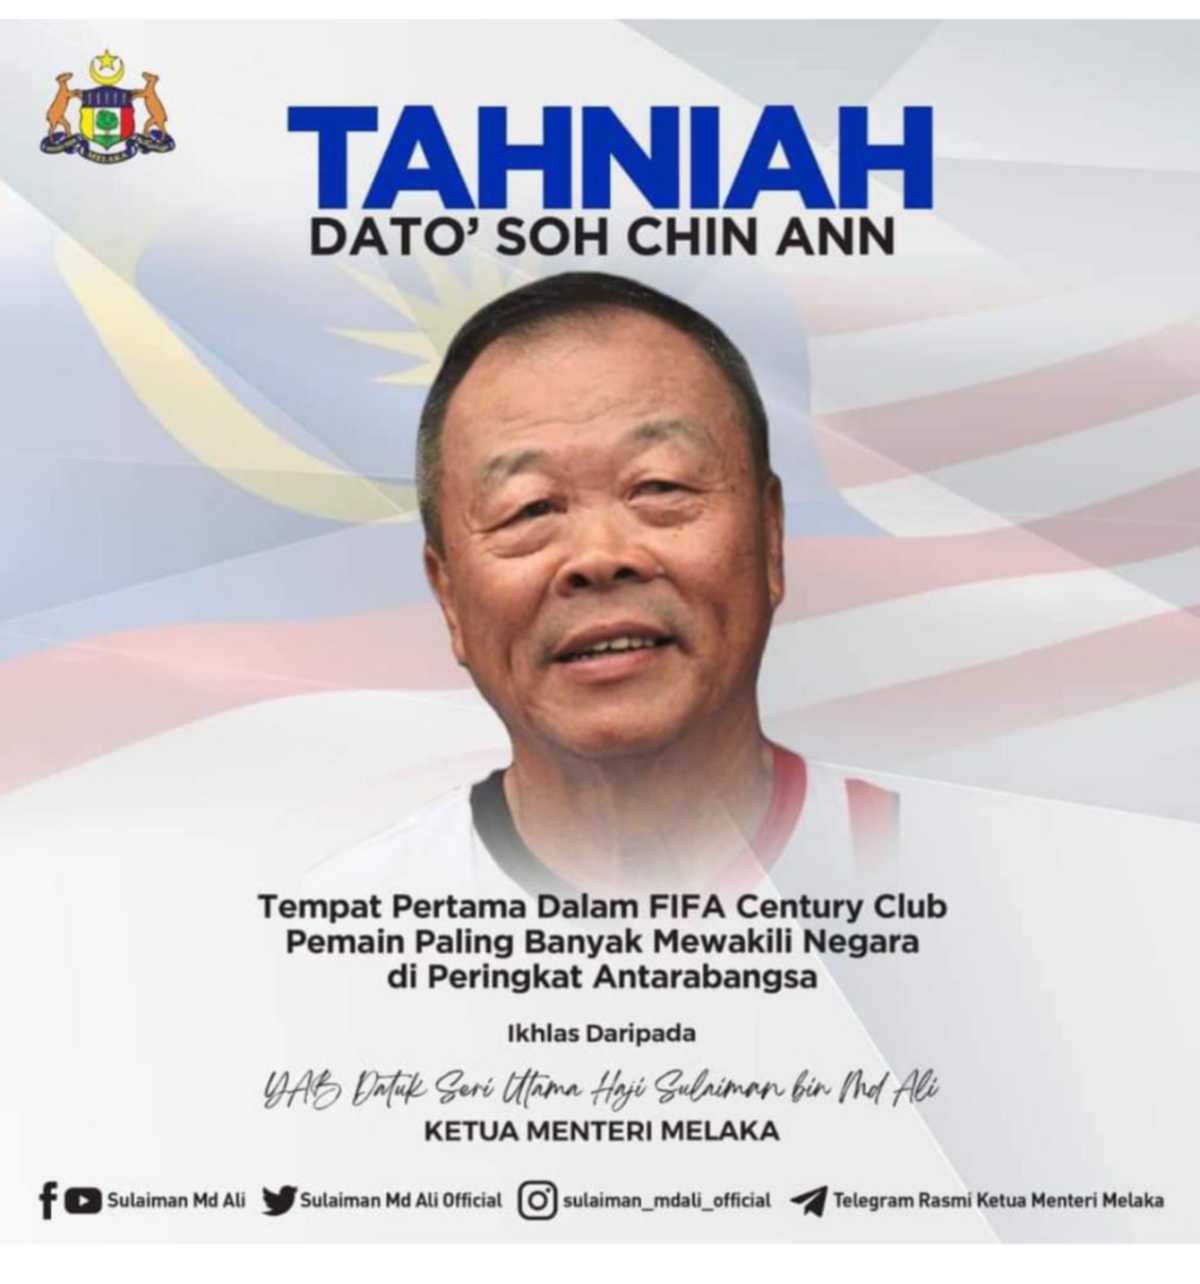 UCAPAN tahniah Ketua Menteri Melaka kepada Datuk Soh Chin Ann.